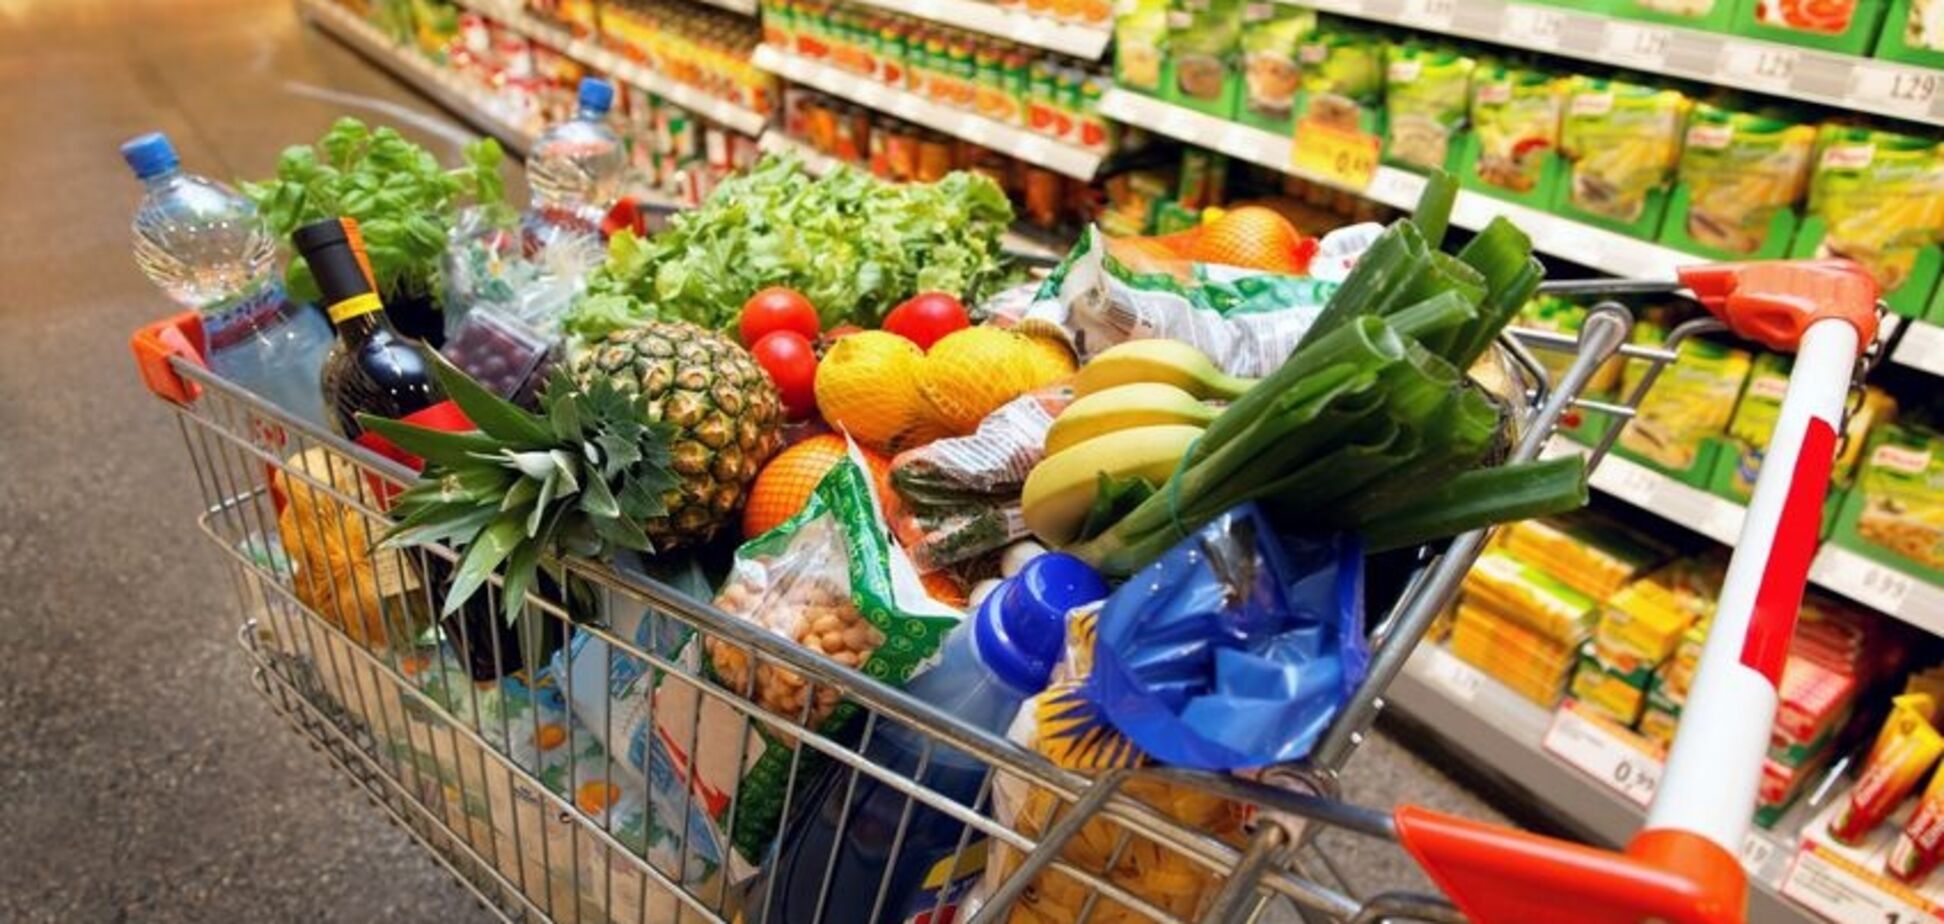 Больше гречки, меньше овощей: на что хватит зарплаты украинцев